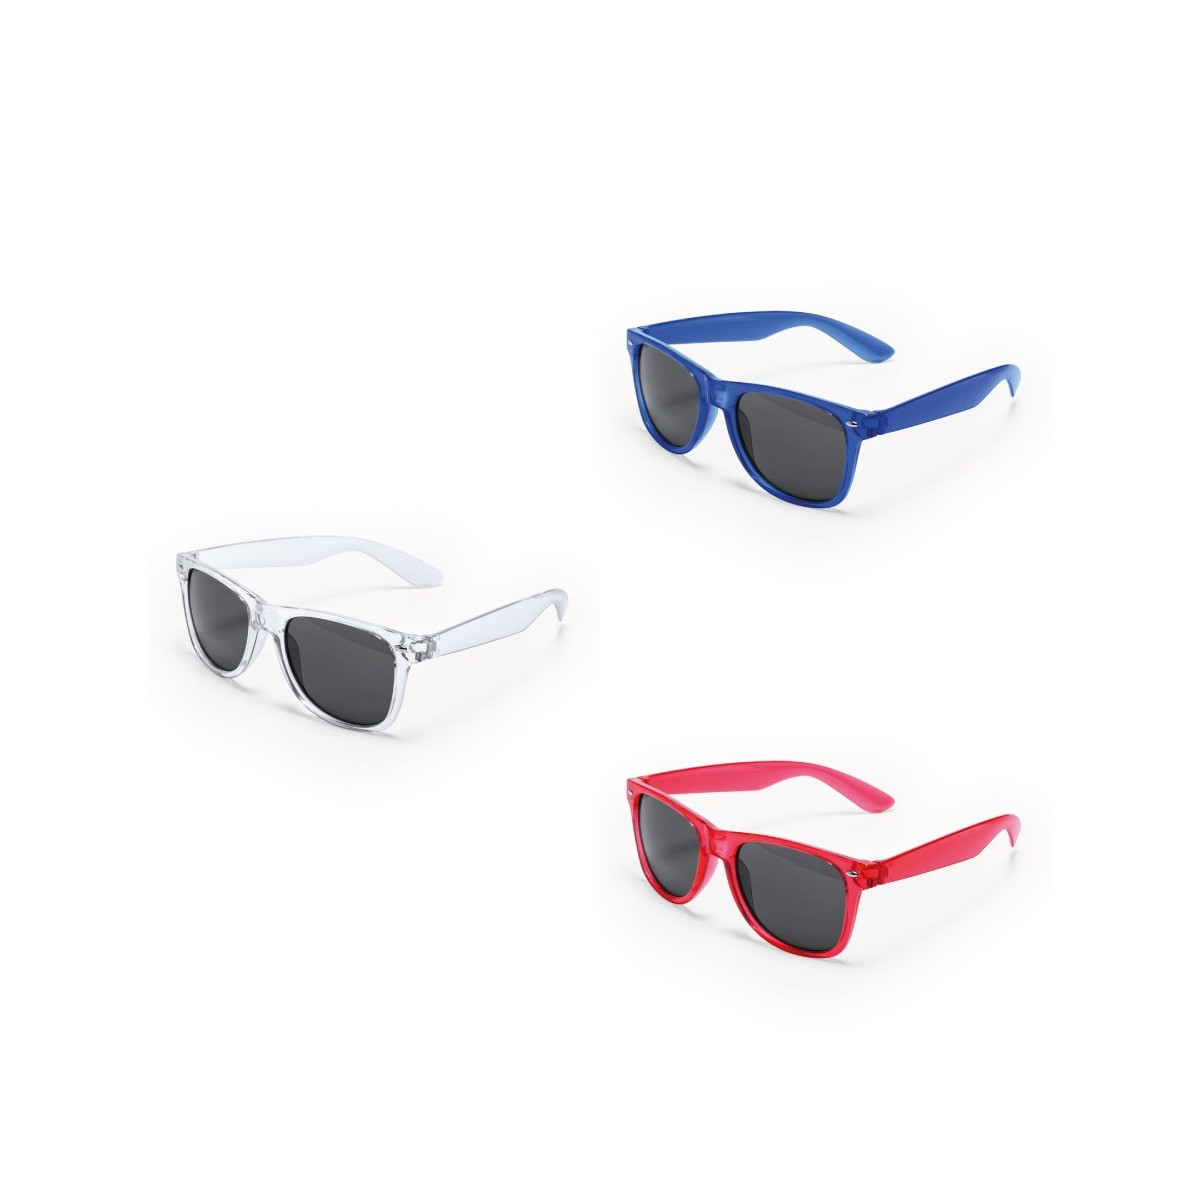 Lote de 30 Gafas De Sol Protección UV400, Decoraciones para